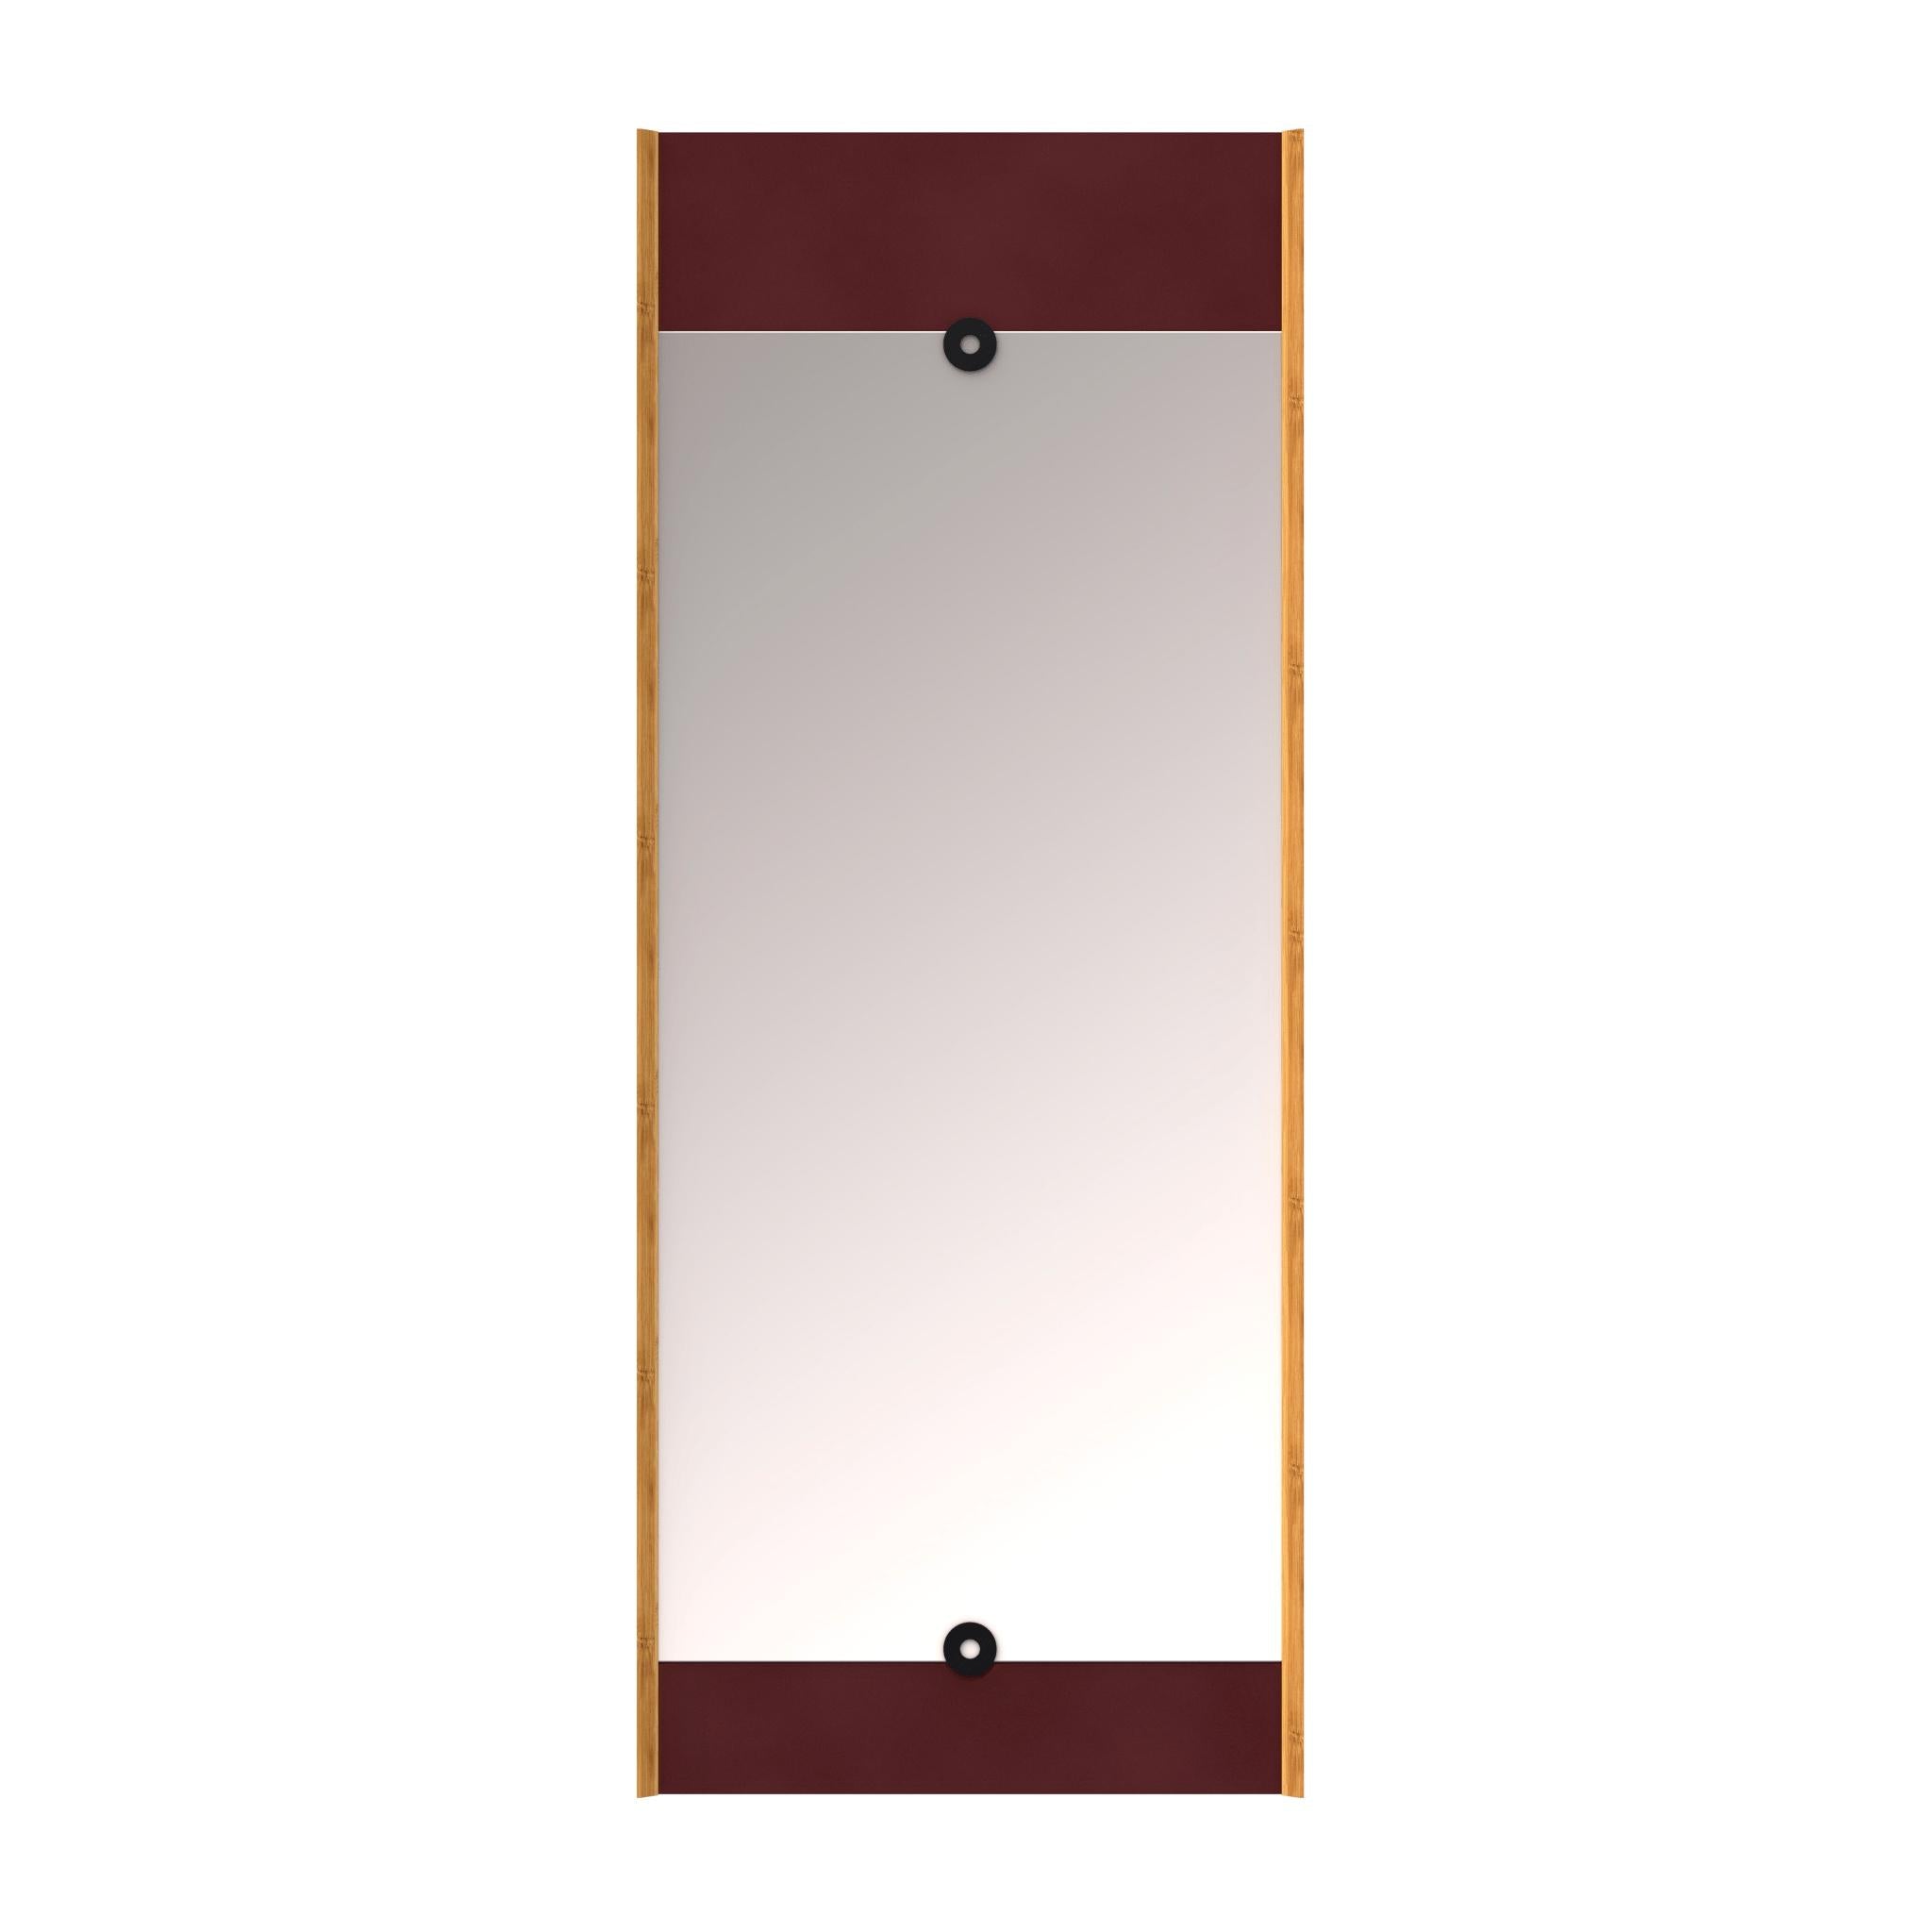 Hacemos espejo de capa de madera Borgoña Red, 125 cm